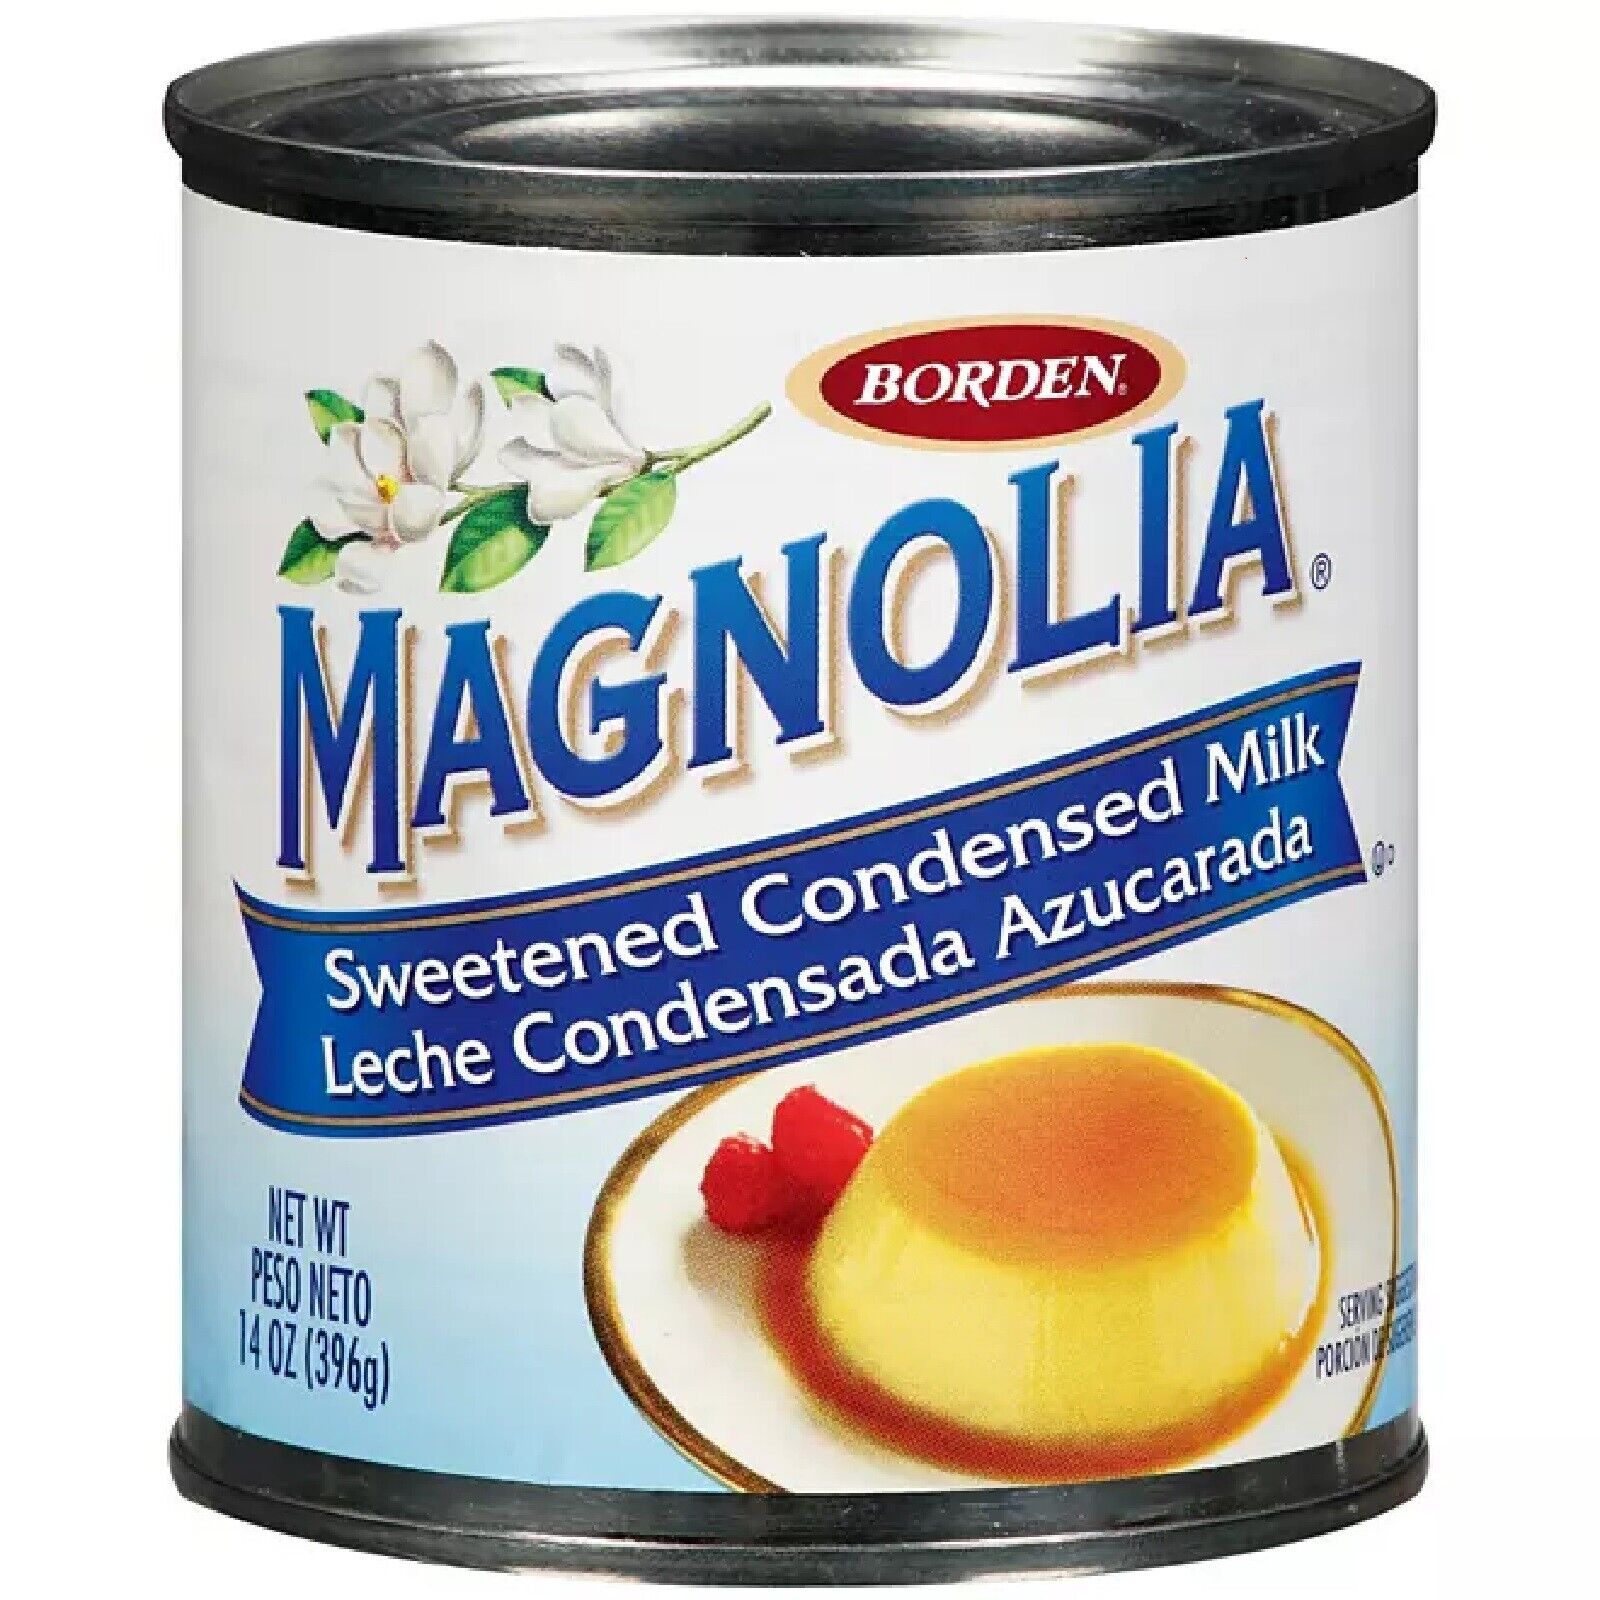 Magnolia Sweetened Condensed Milk (14 oz., 6 pk.)